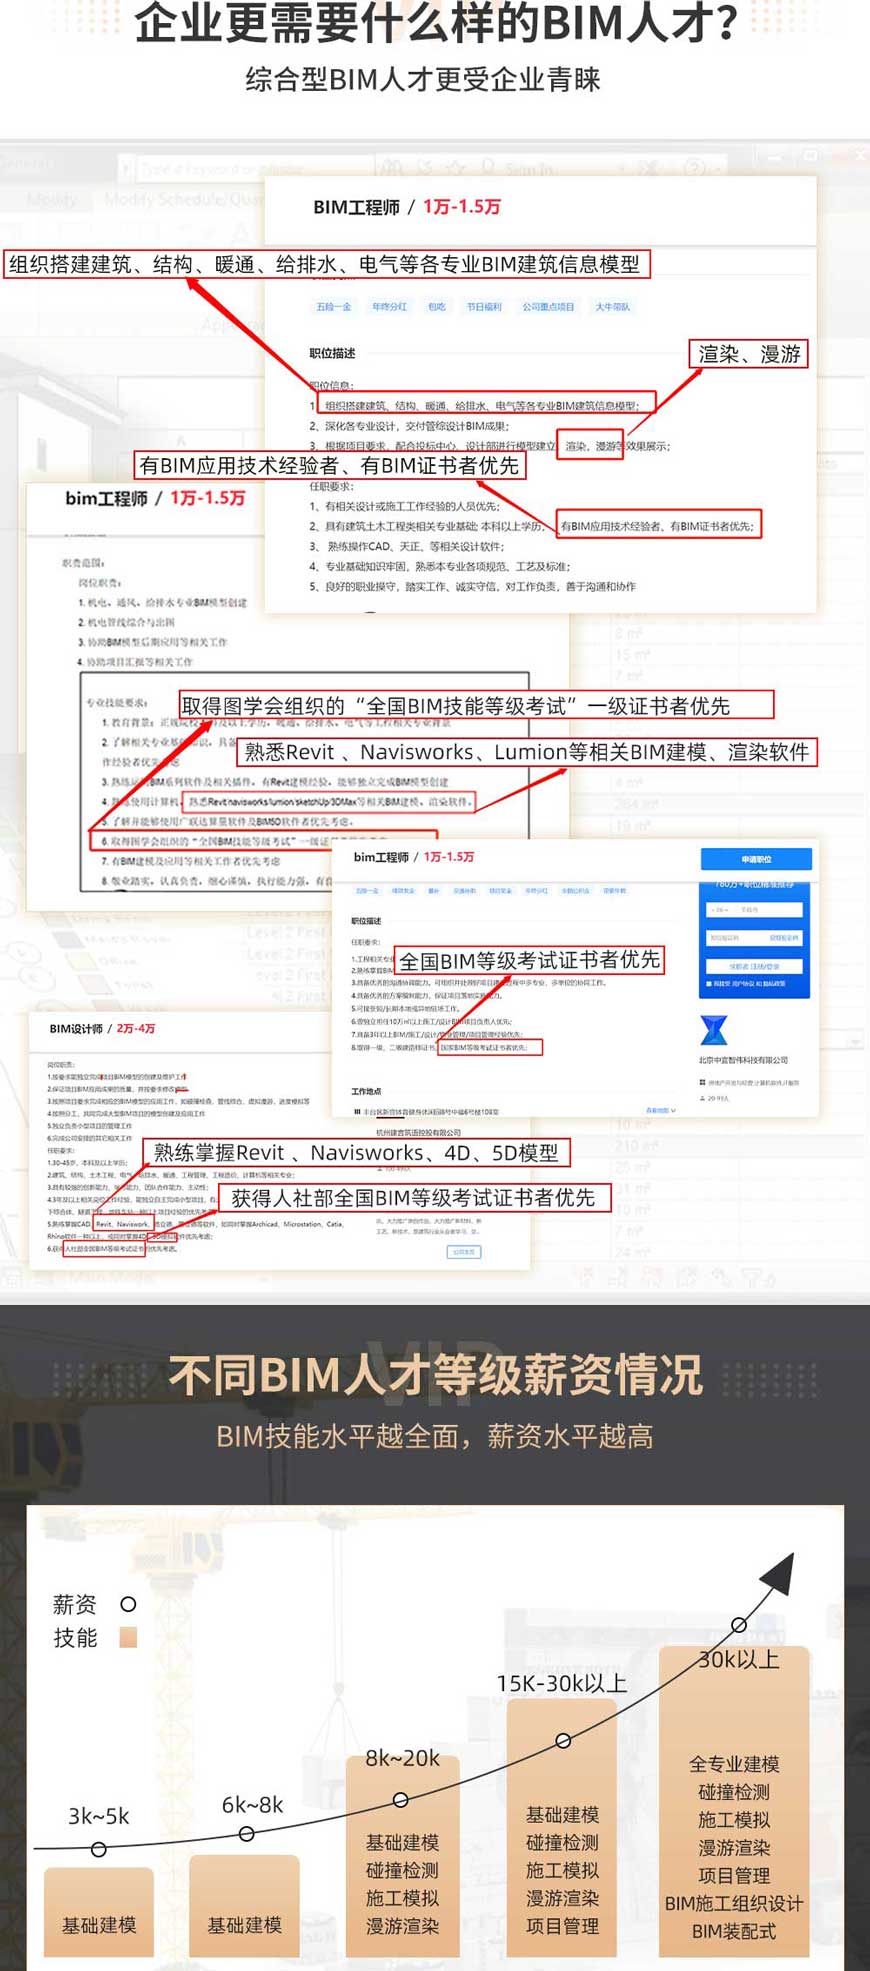 南京BIM培训班,南京BIM培训就到南京小筑教育,南京小筑bim培训机构更专业靠谱